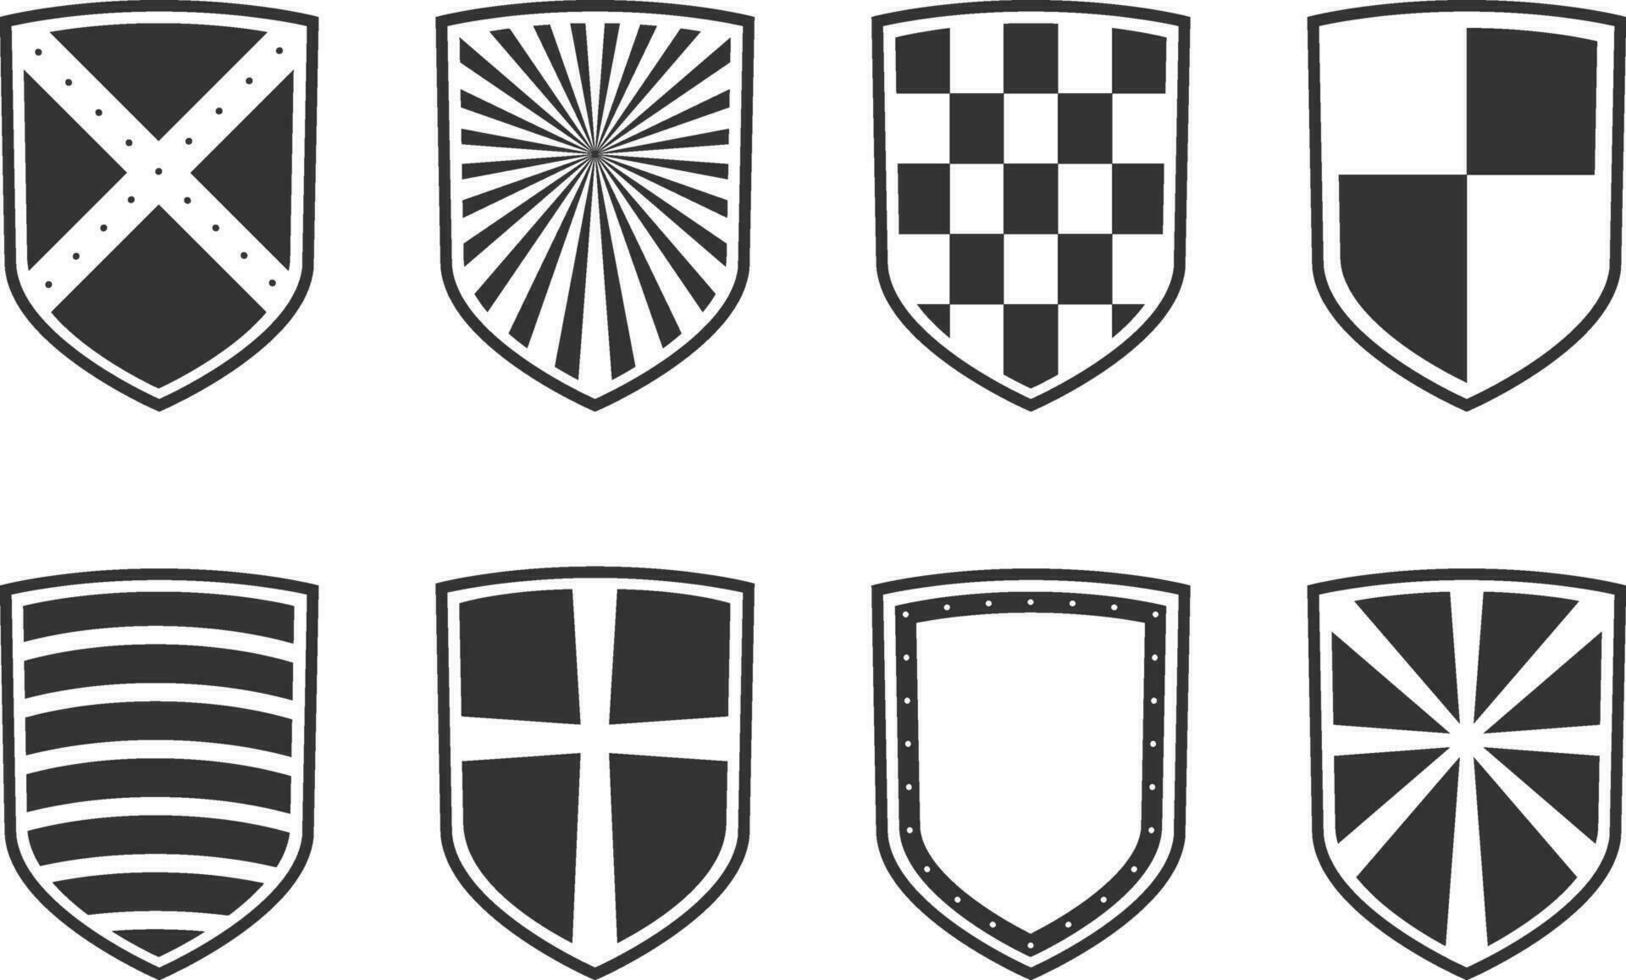 veilig en bewaker beschermen symbool. vector reeks heraldisch schild met verschillend patroon.